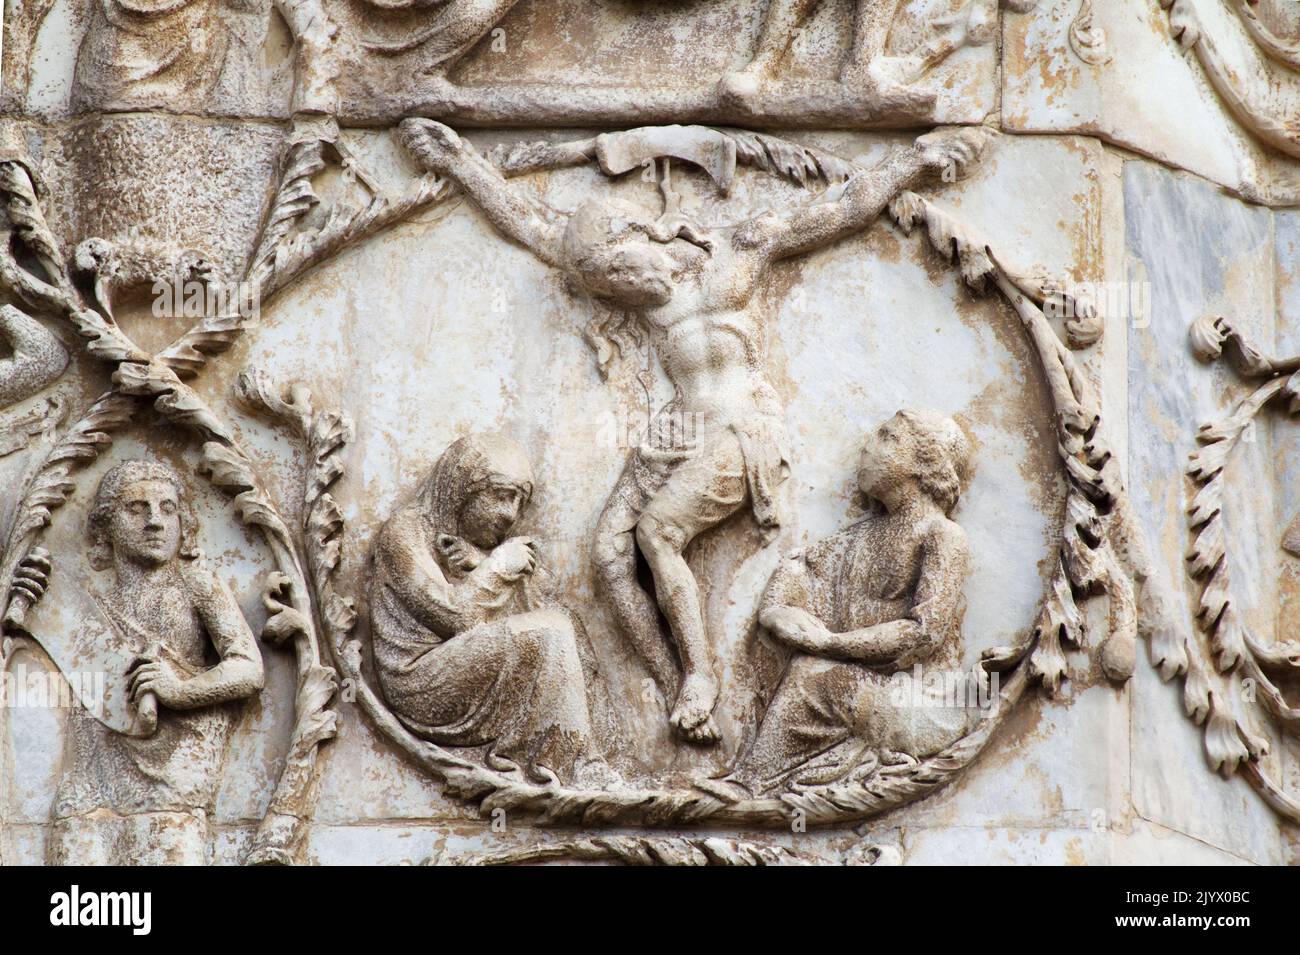 La crocifissione e la morte di Gesù - bassorilievo dal 3th° pilastro (nuovo Testamento) - facciata della cattedrale di Orvieto - Umbria - Italia Foto Stock